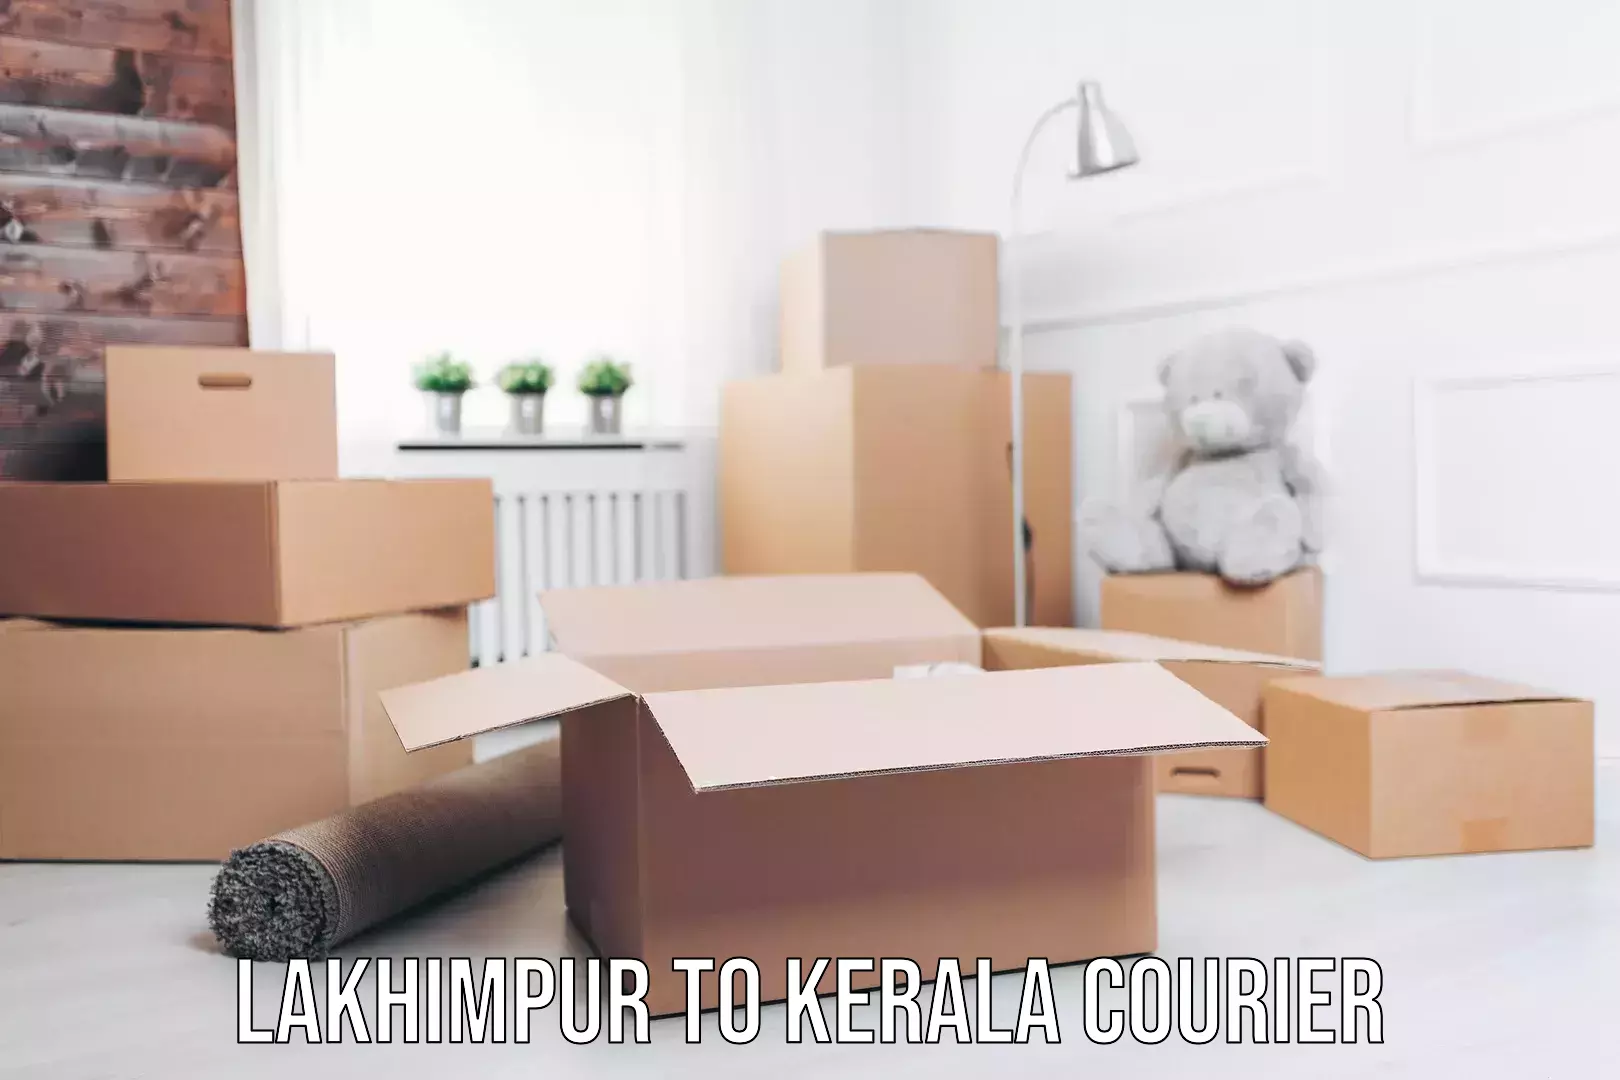 Home furniture moving Lakhimpur to Kerala